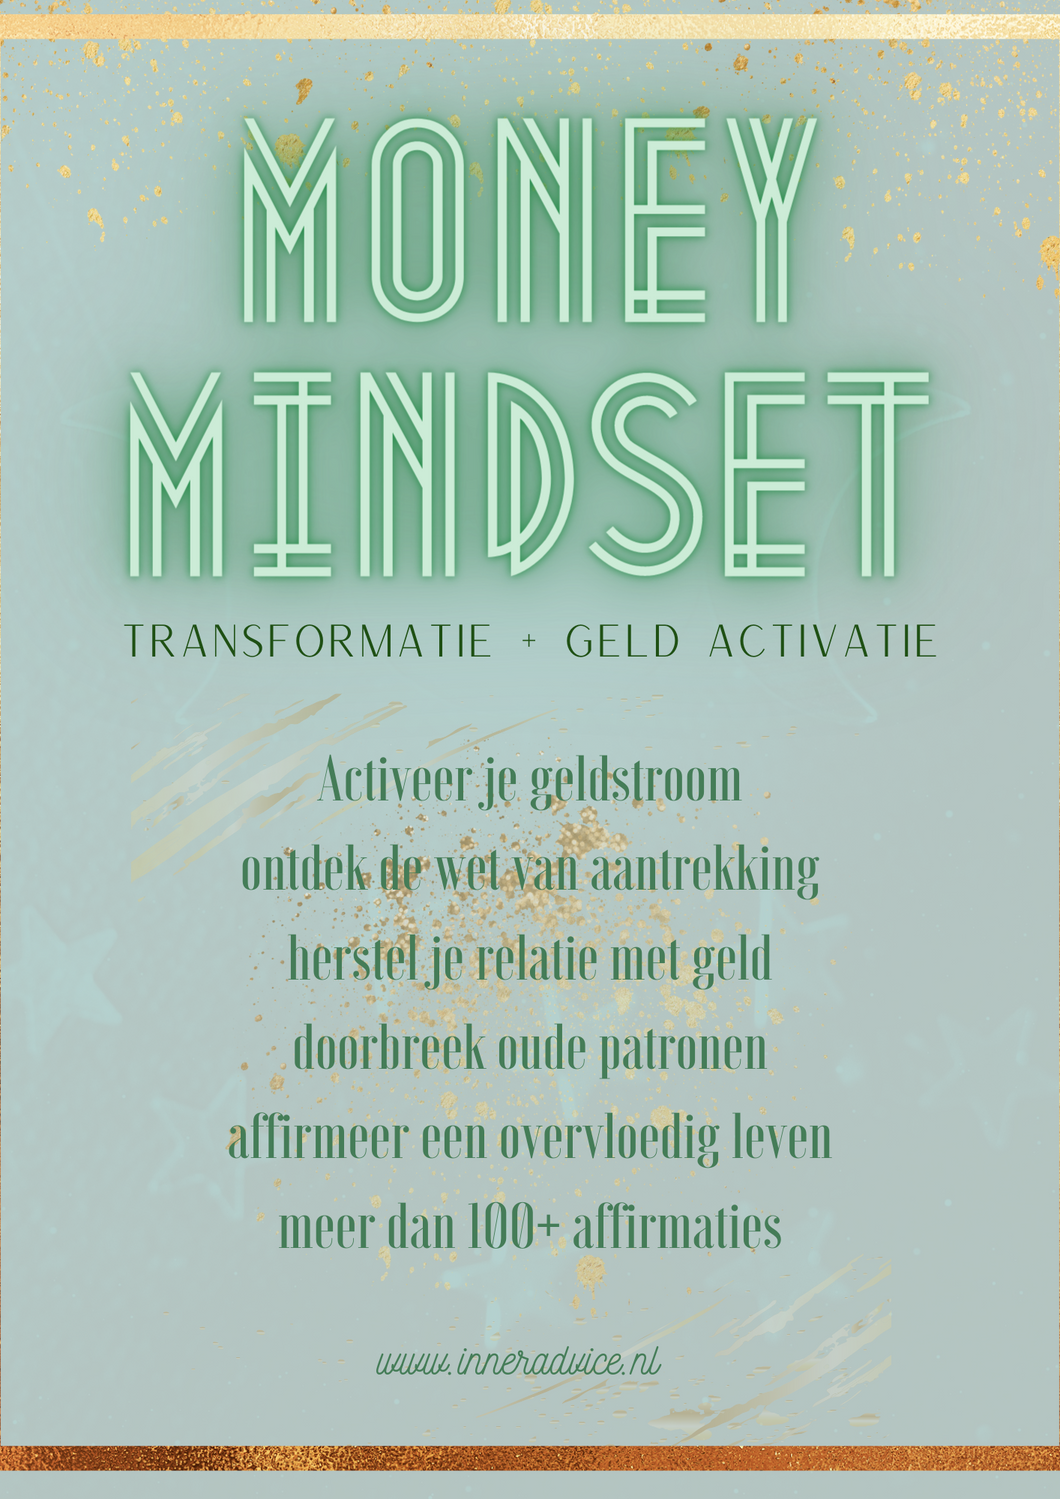 Money mindset, transformatie & geld activatie E-book